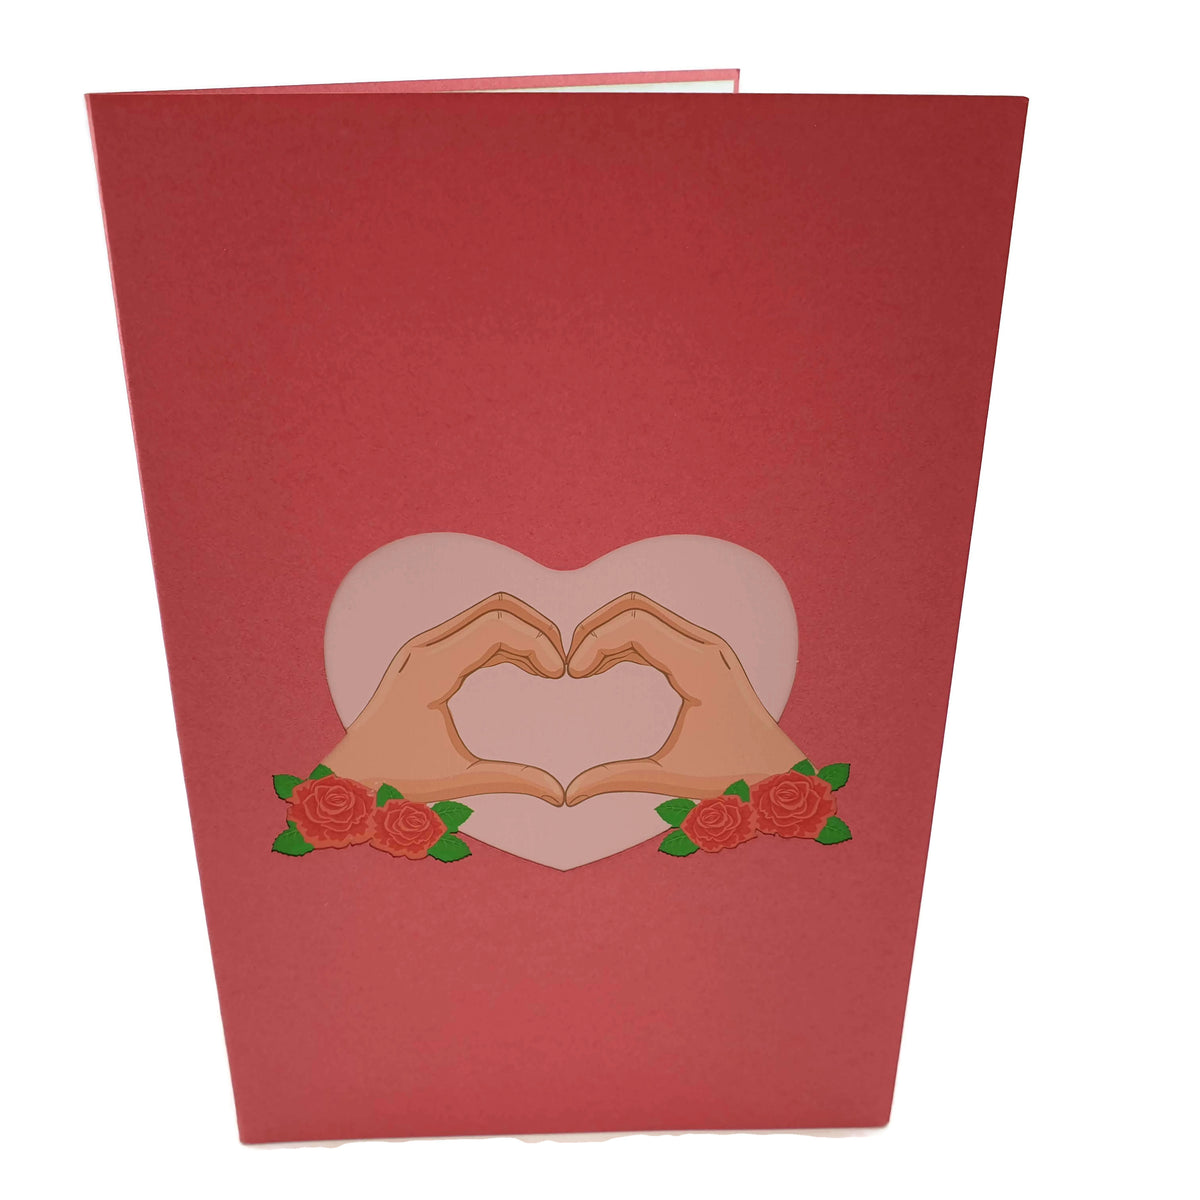 Love Heart pop up card